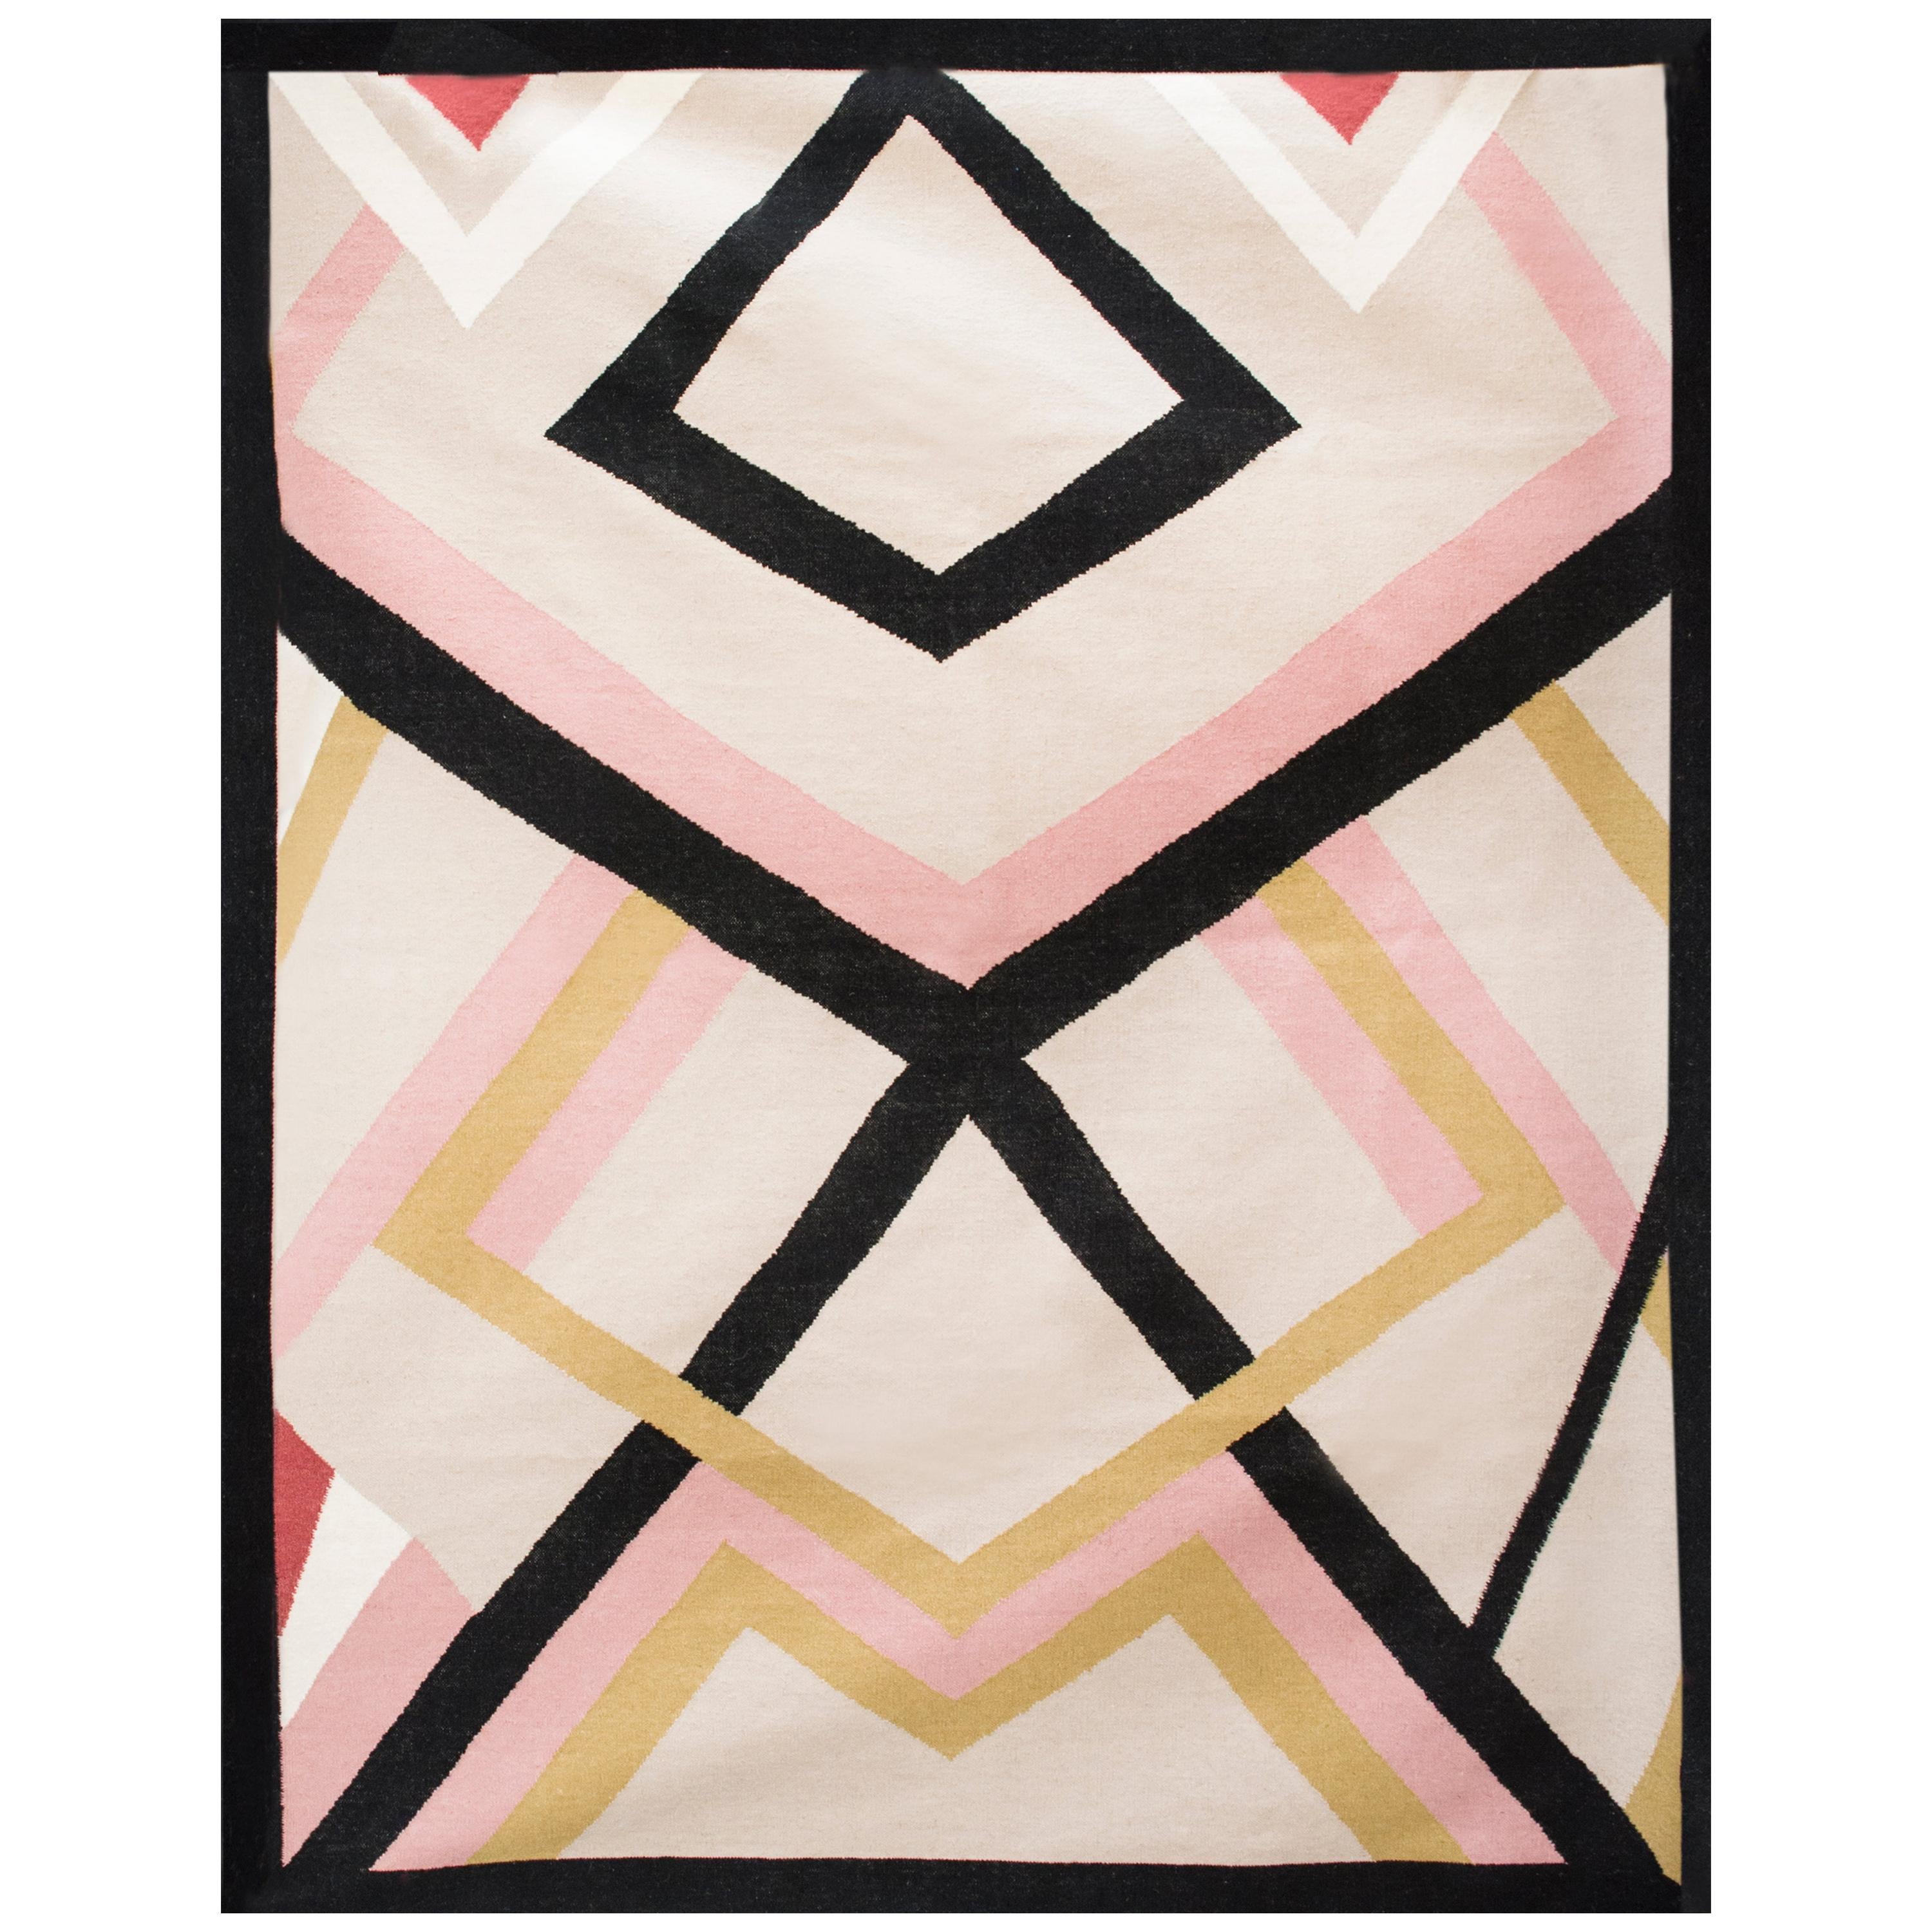 Moderner handgewebter Flachgewebe-Kelim-Teppich aus Wolle in Rosa, Schwarz, Gold und Weiß, geometrisch